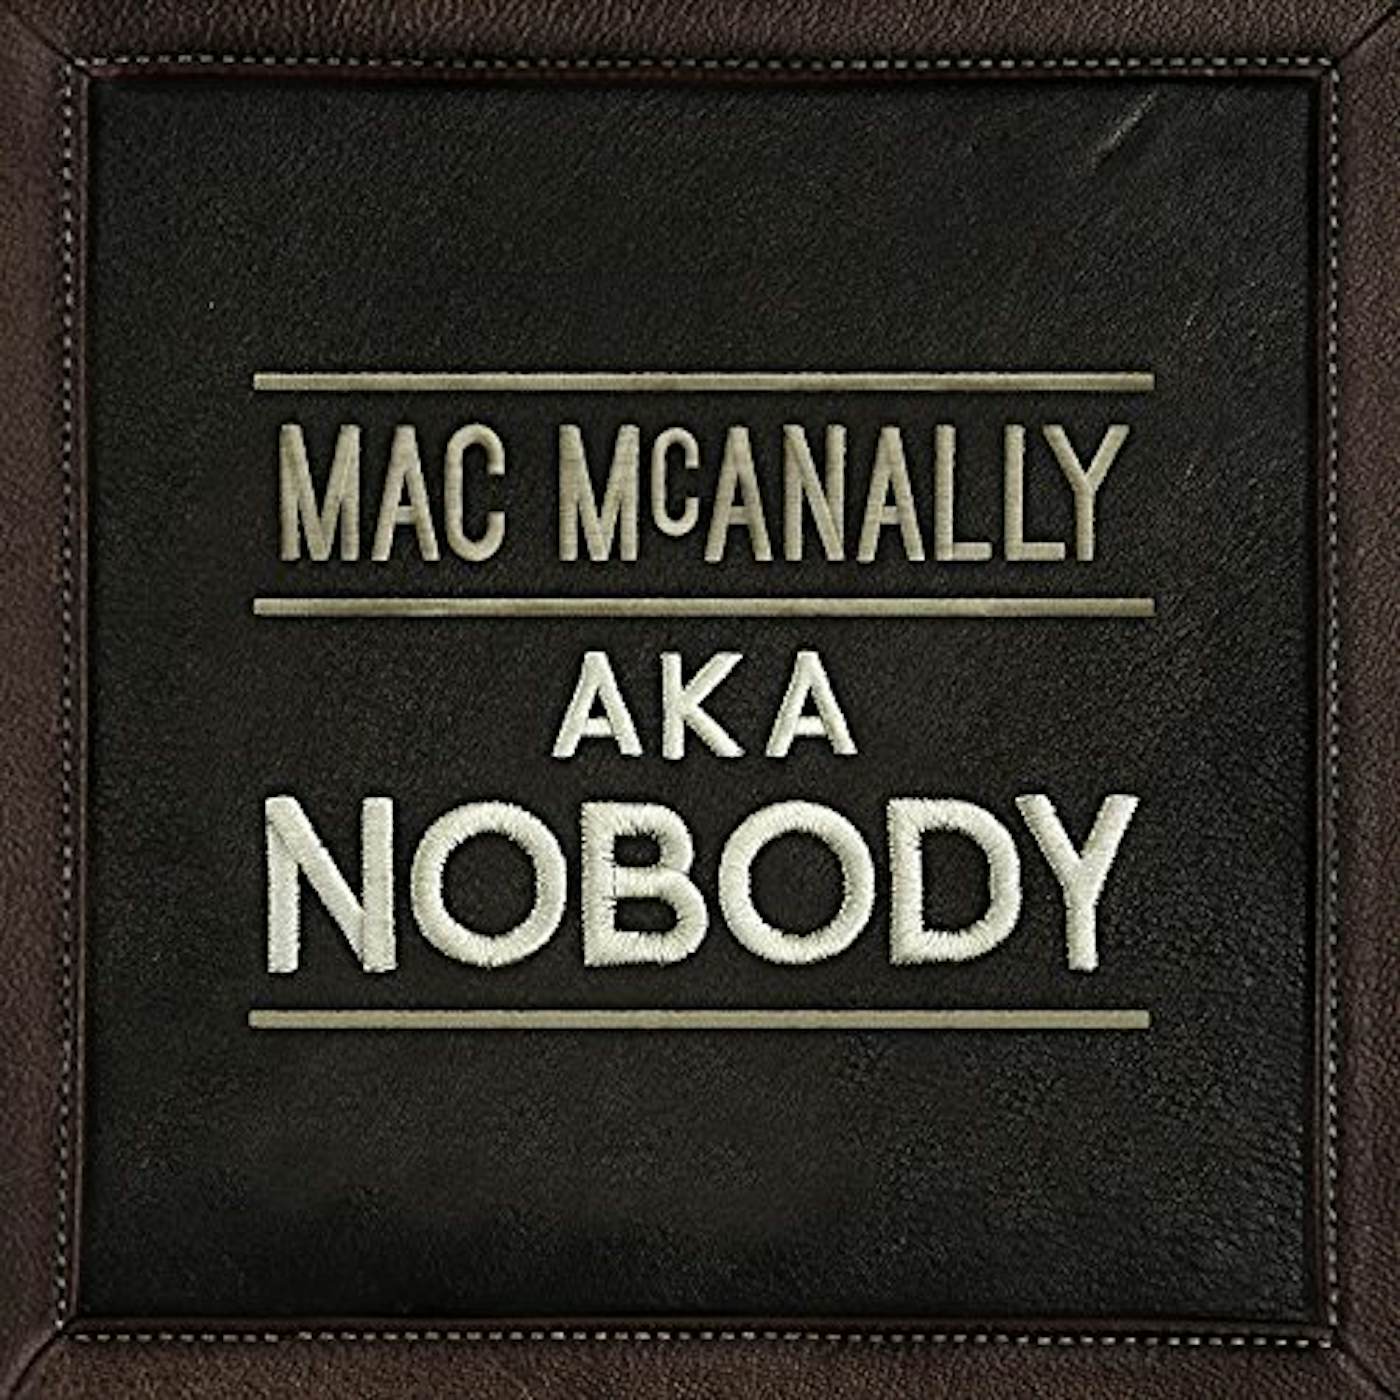 Mac McAnally AKA NOBODY CD